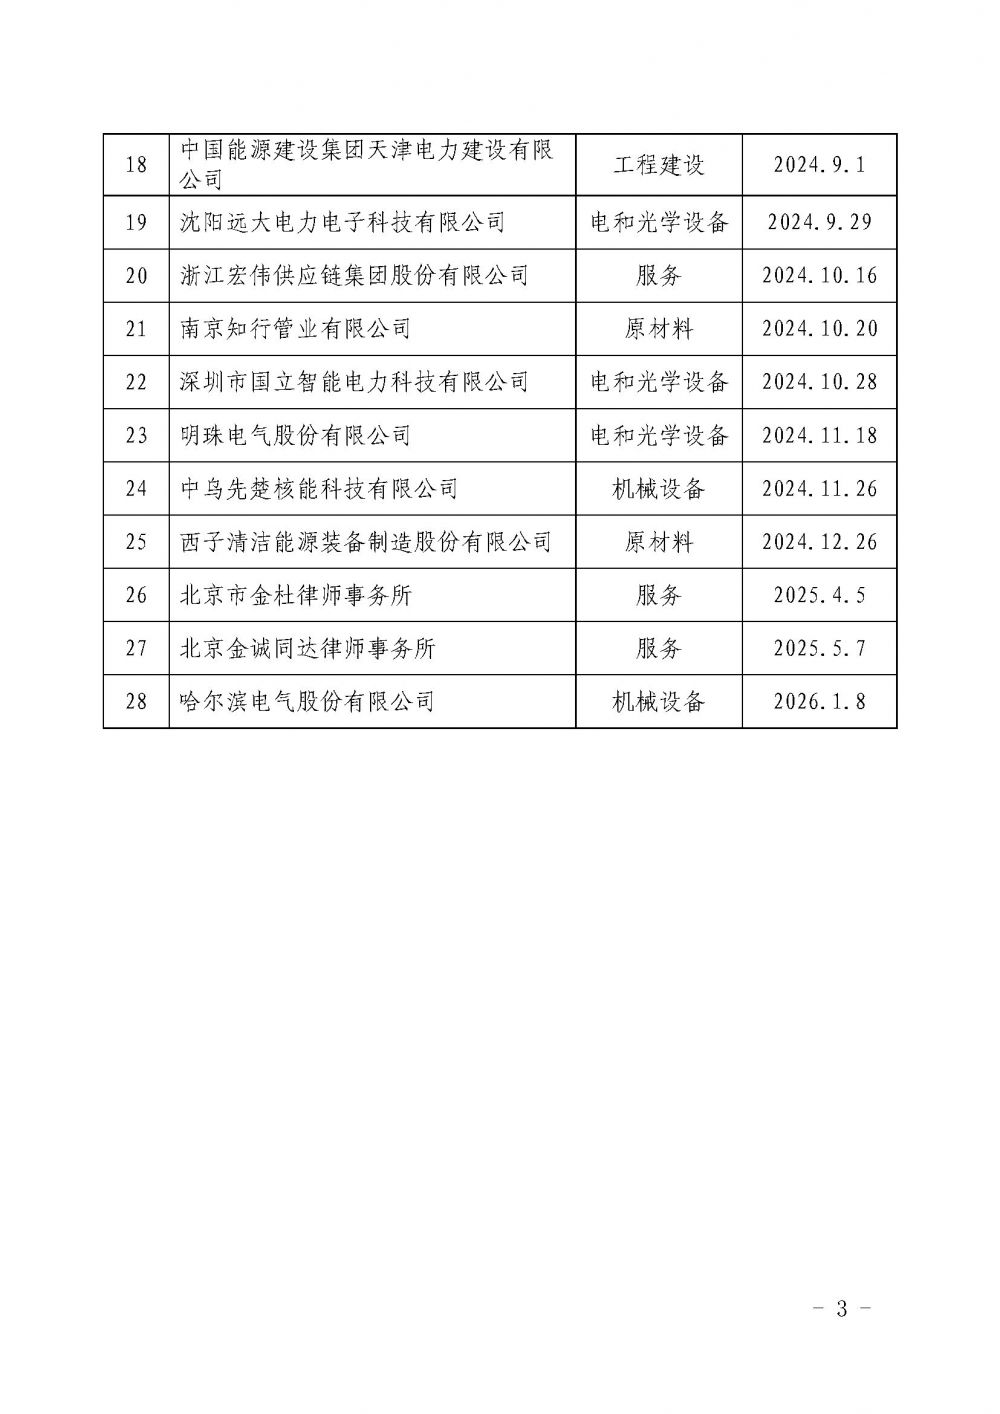 关于发布中国核能行业协会核能行业第十八批合格供应商名录的公告_页面_3.jpg